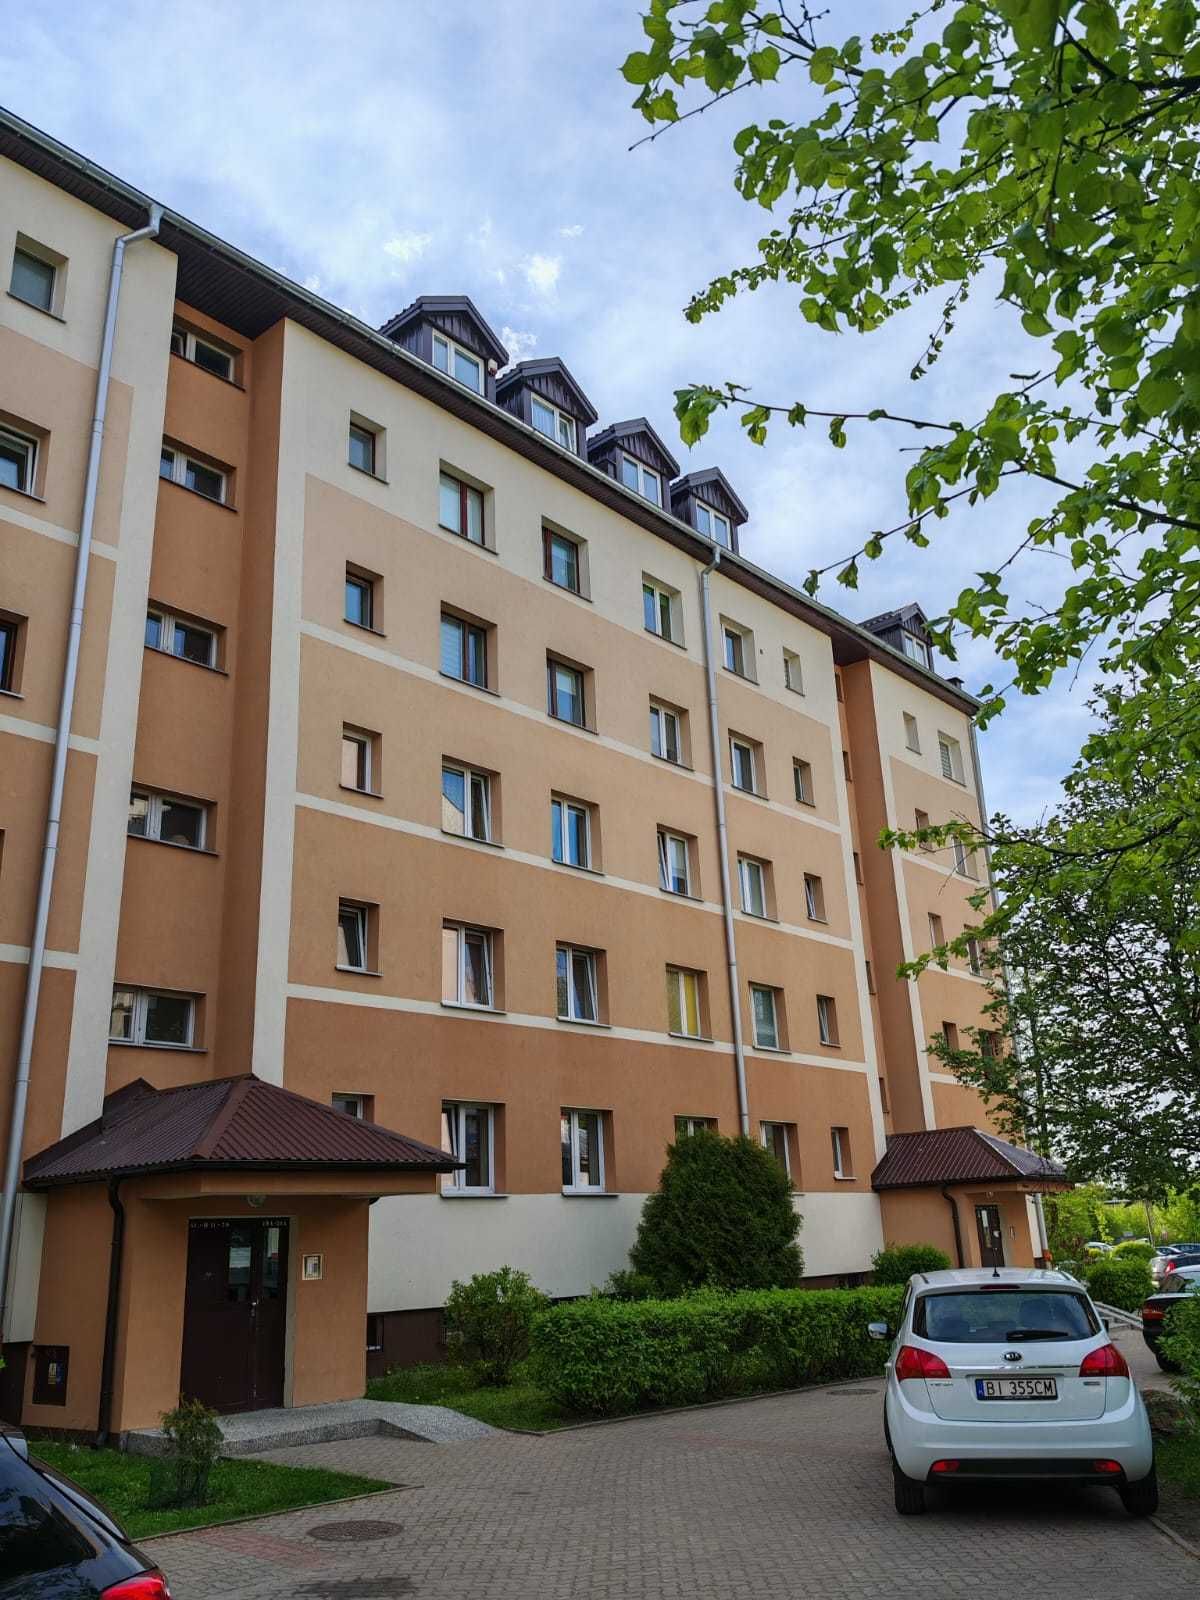 Mieszkanie idealne pod inwestycję lub dla rodziny Białystok ul.Wiejska